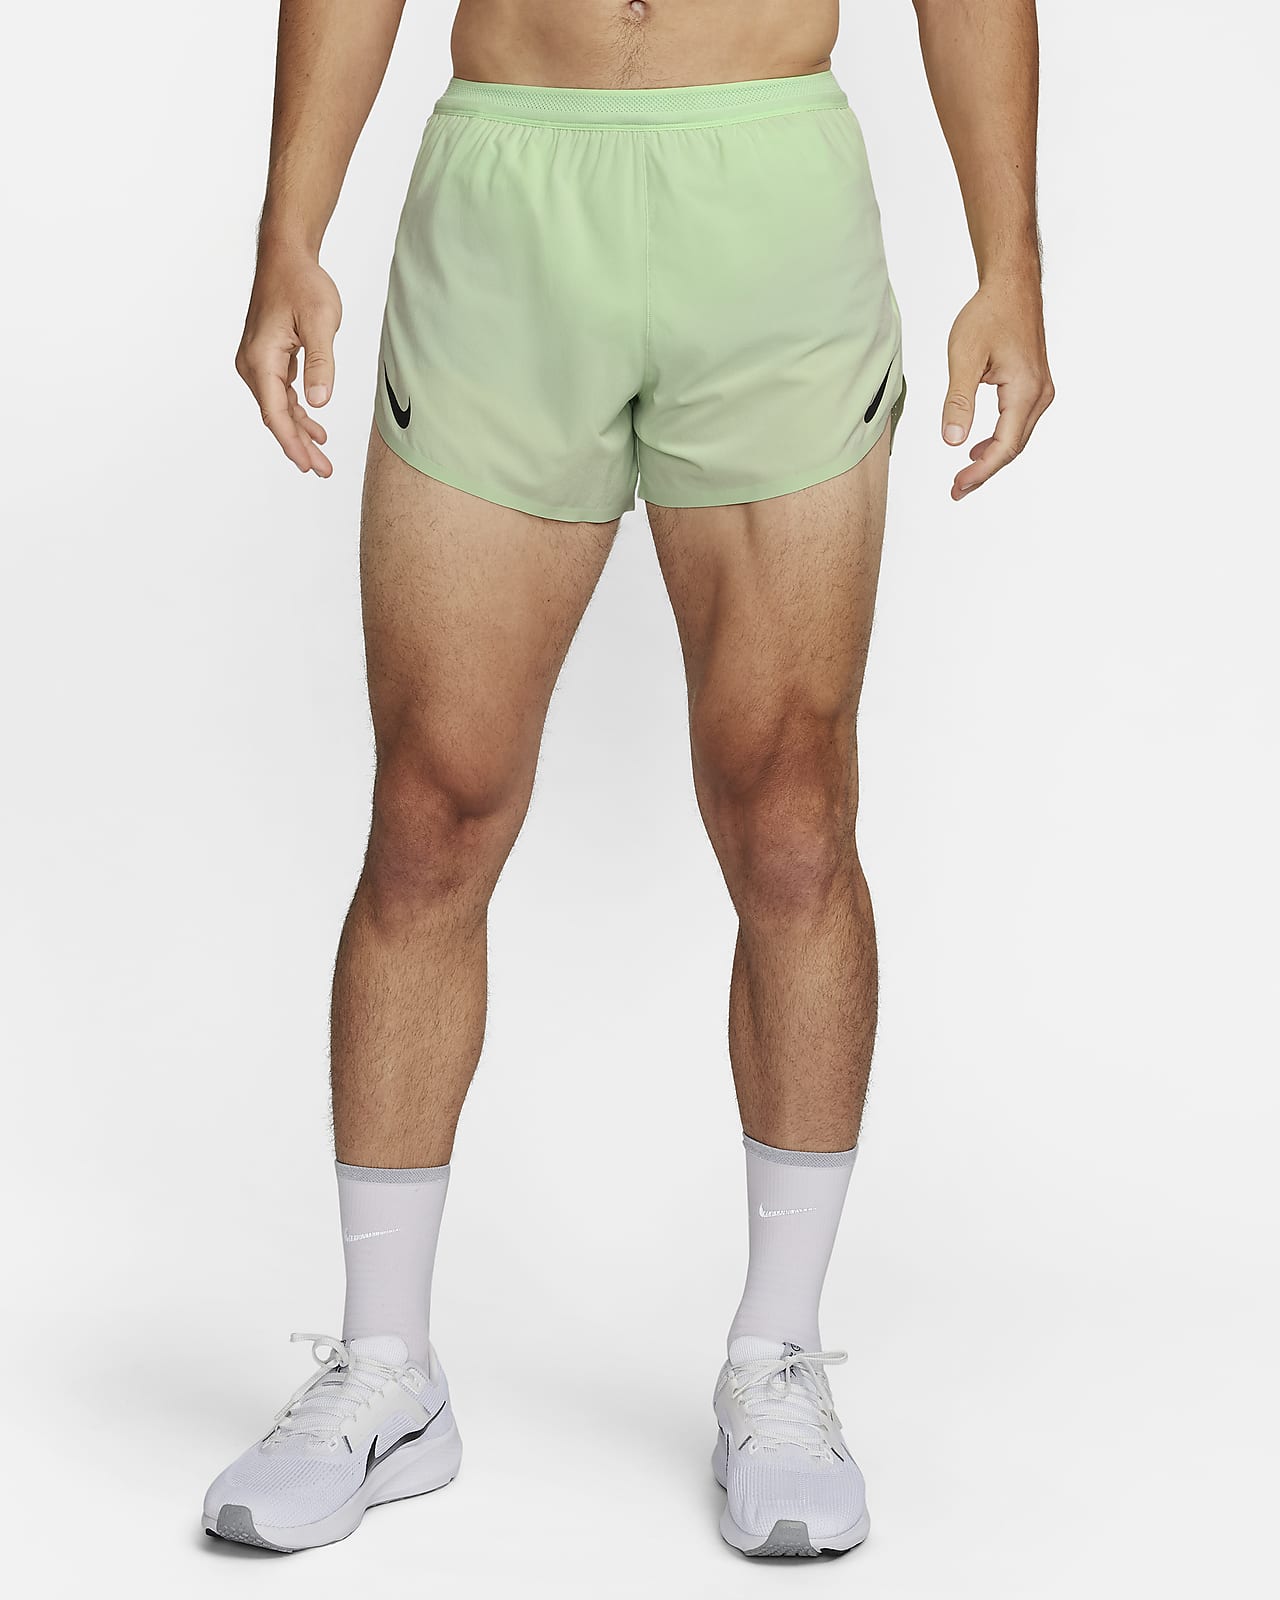 Shorts de running Dri-FIT ADV de 10 cm con forro de ropa interior para hombre Nike AeroSwift